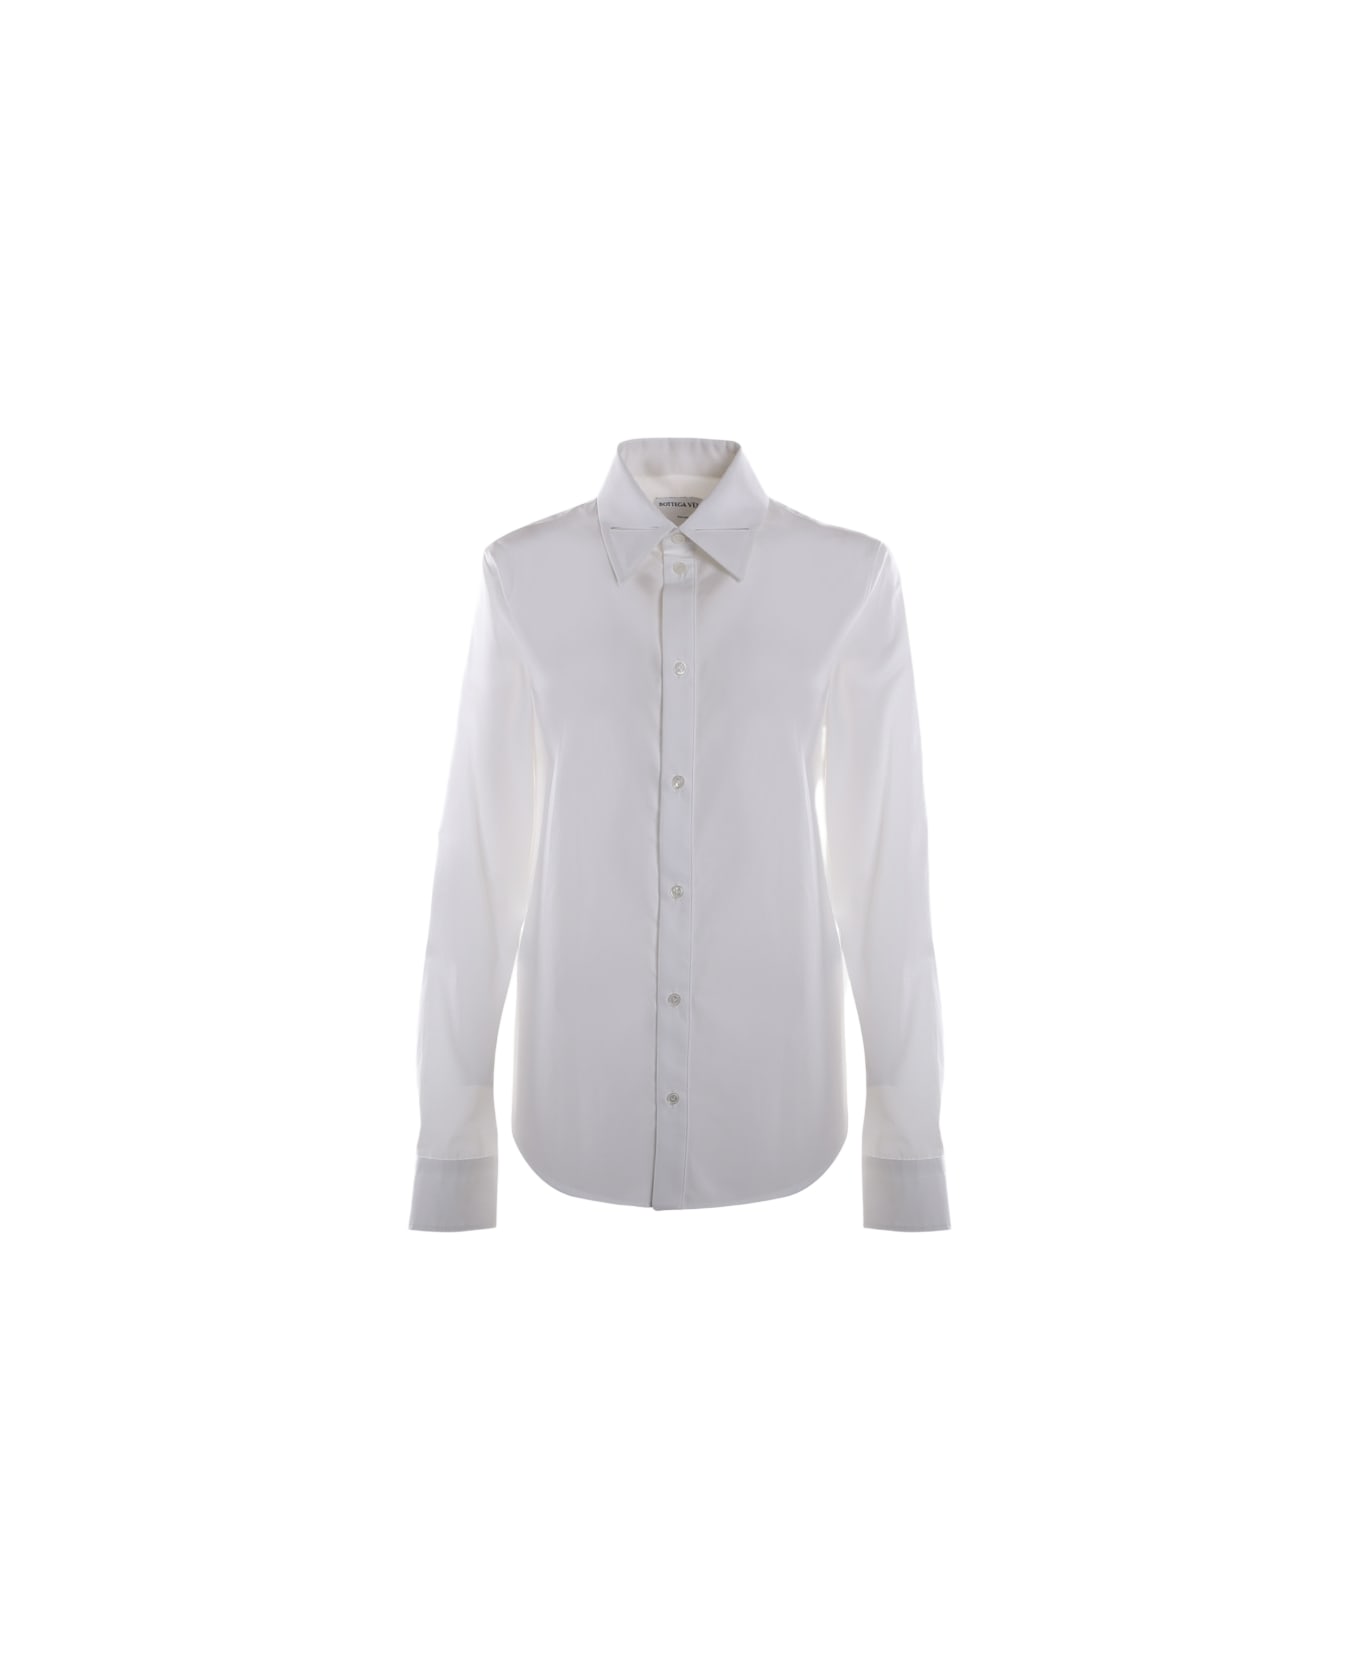 Bottega Veneta Basic Shirt Made Of Cotton - White